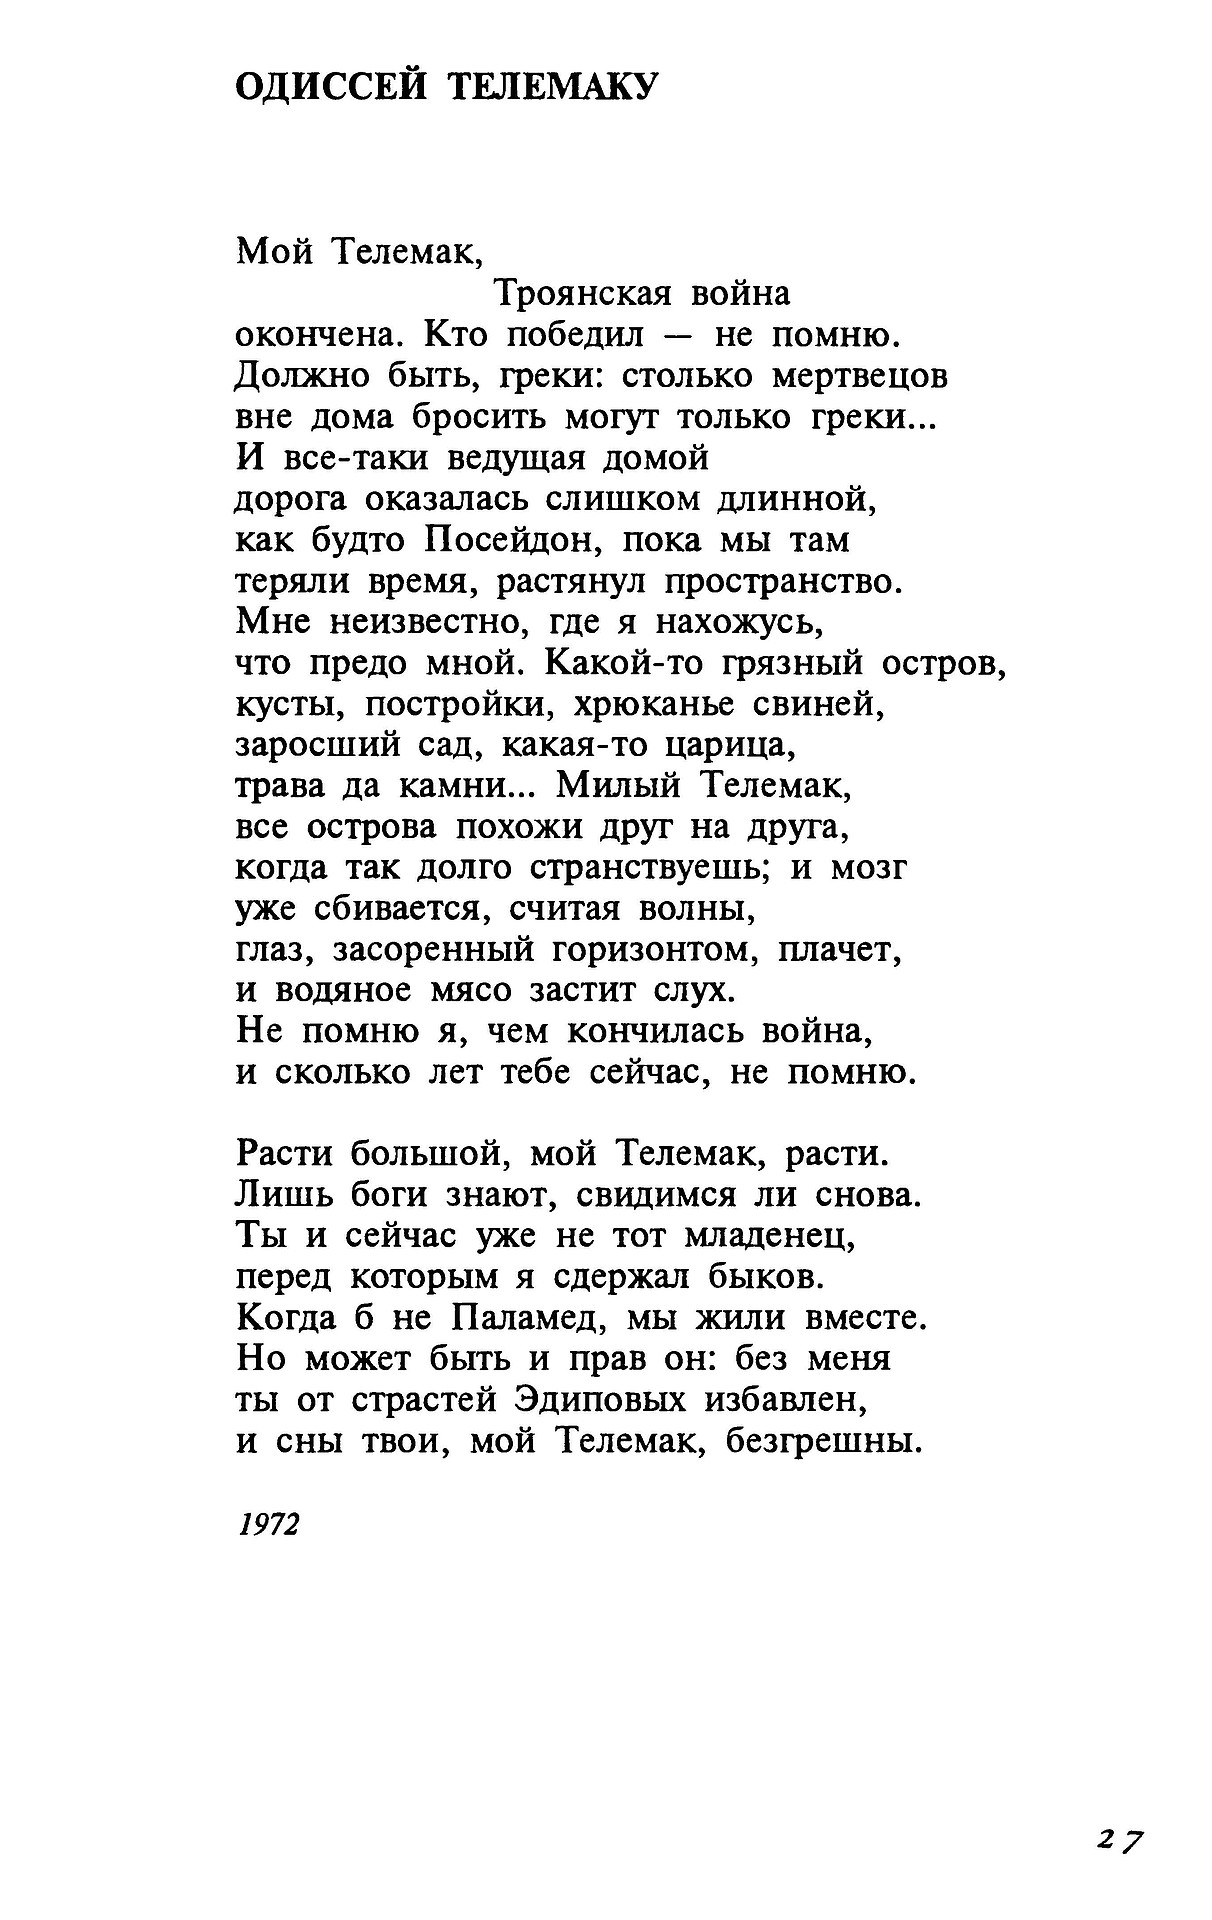 Стихотворение бродского про украину текст